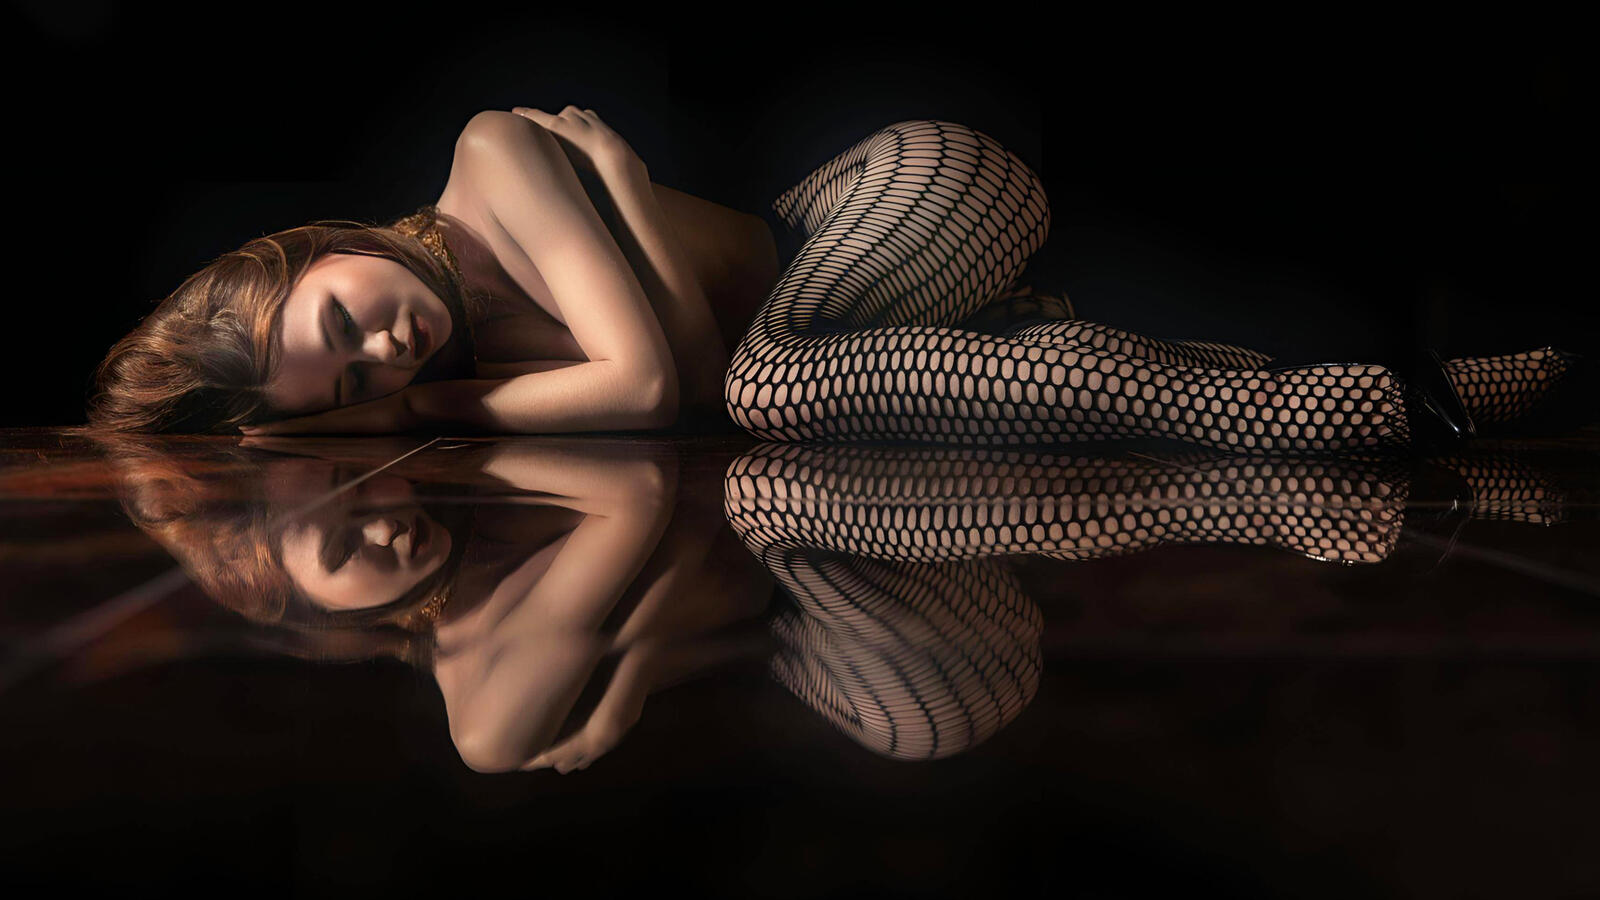 Бесплатное фото Девочка лежит на зеркальном полу в темноте